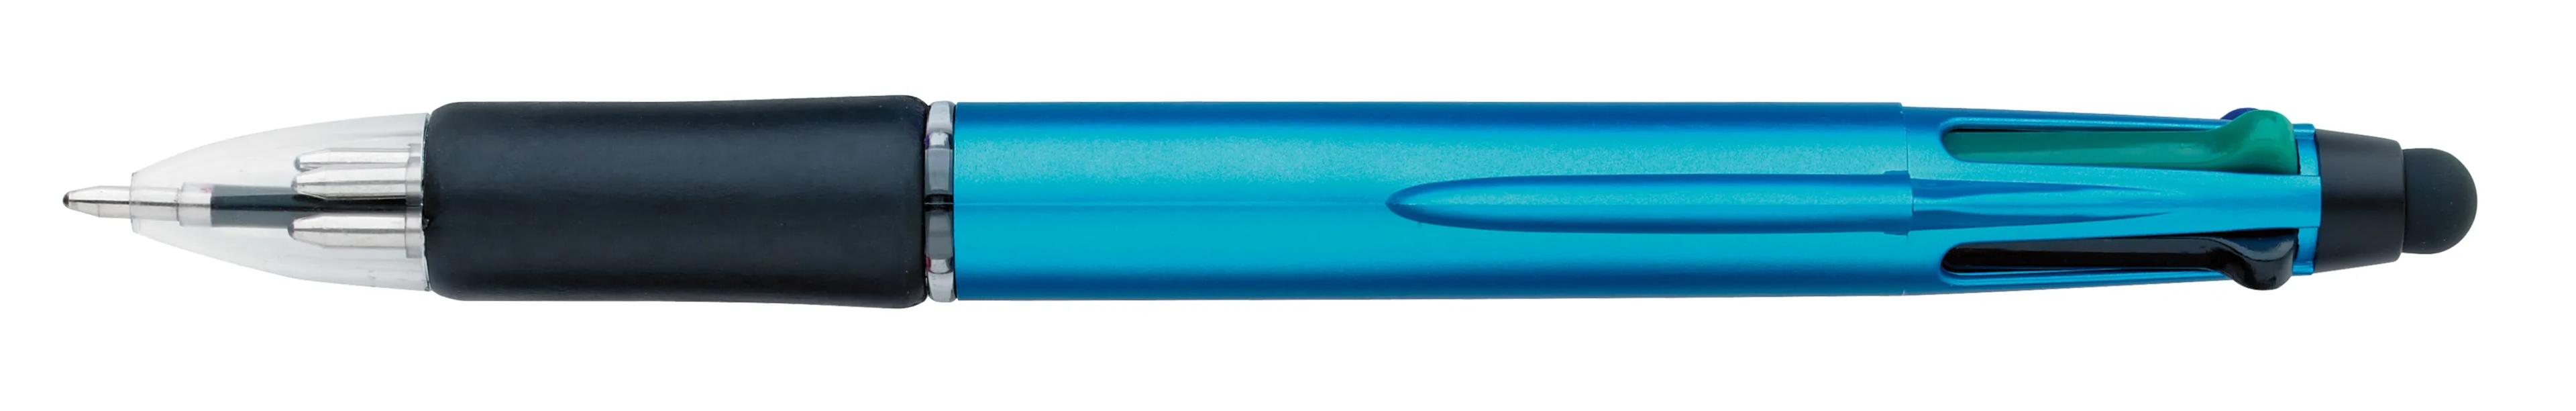 Orbitor Metallic Stylus Pen 40 of 56